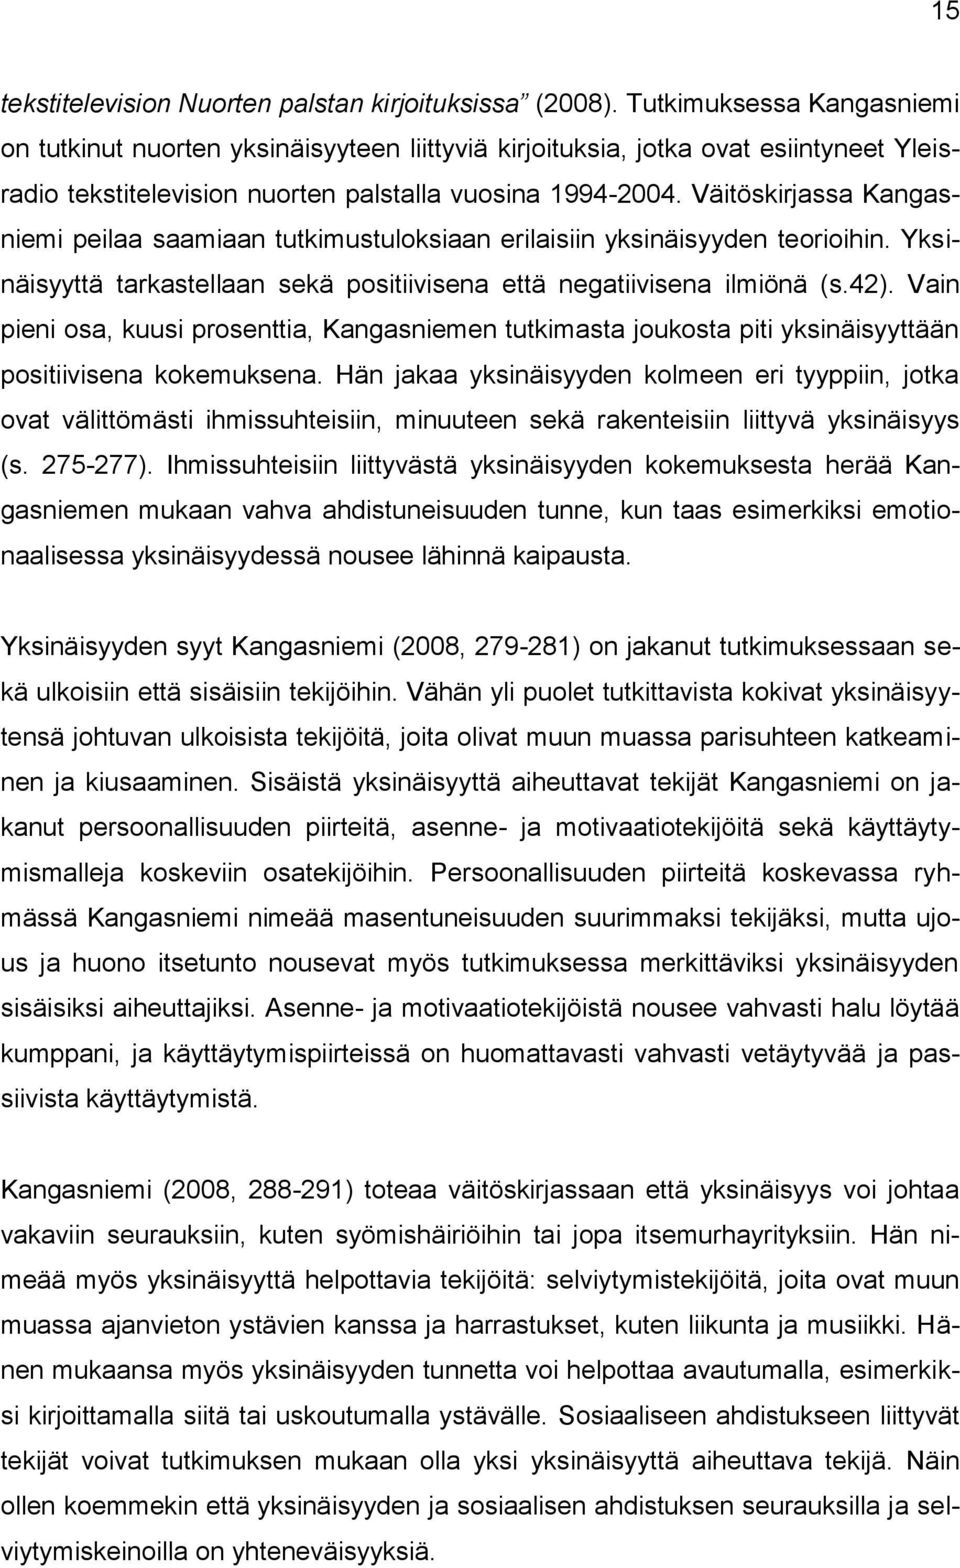 Väitöskirjassa Kangasniemi peilaa saamiaan tutkimustuloksiaan erilaisiin yksinäisyyden teorioihin. Yksinäisyyttä tarkastellaan sekä positiivisena että negatiivisena ilmiönä (s.42).